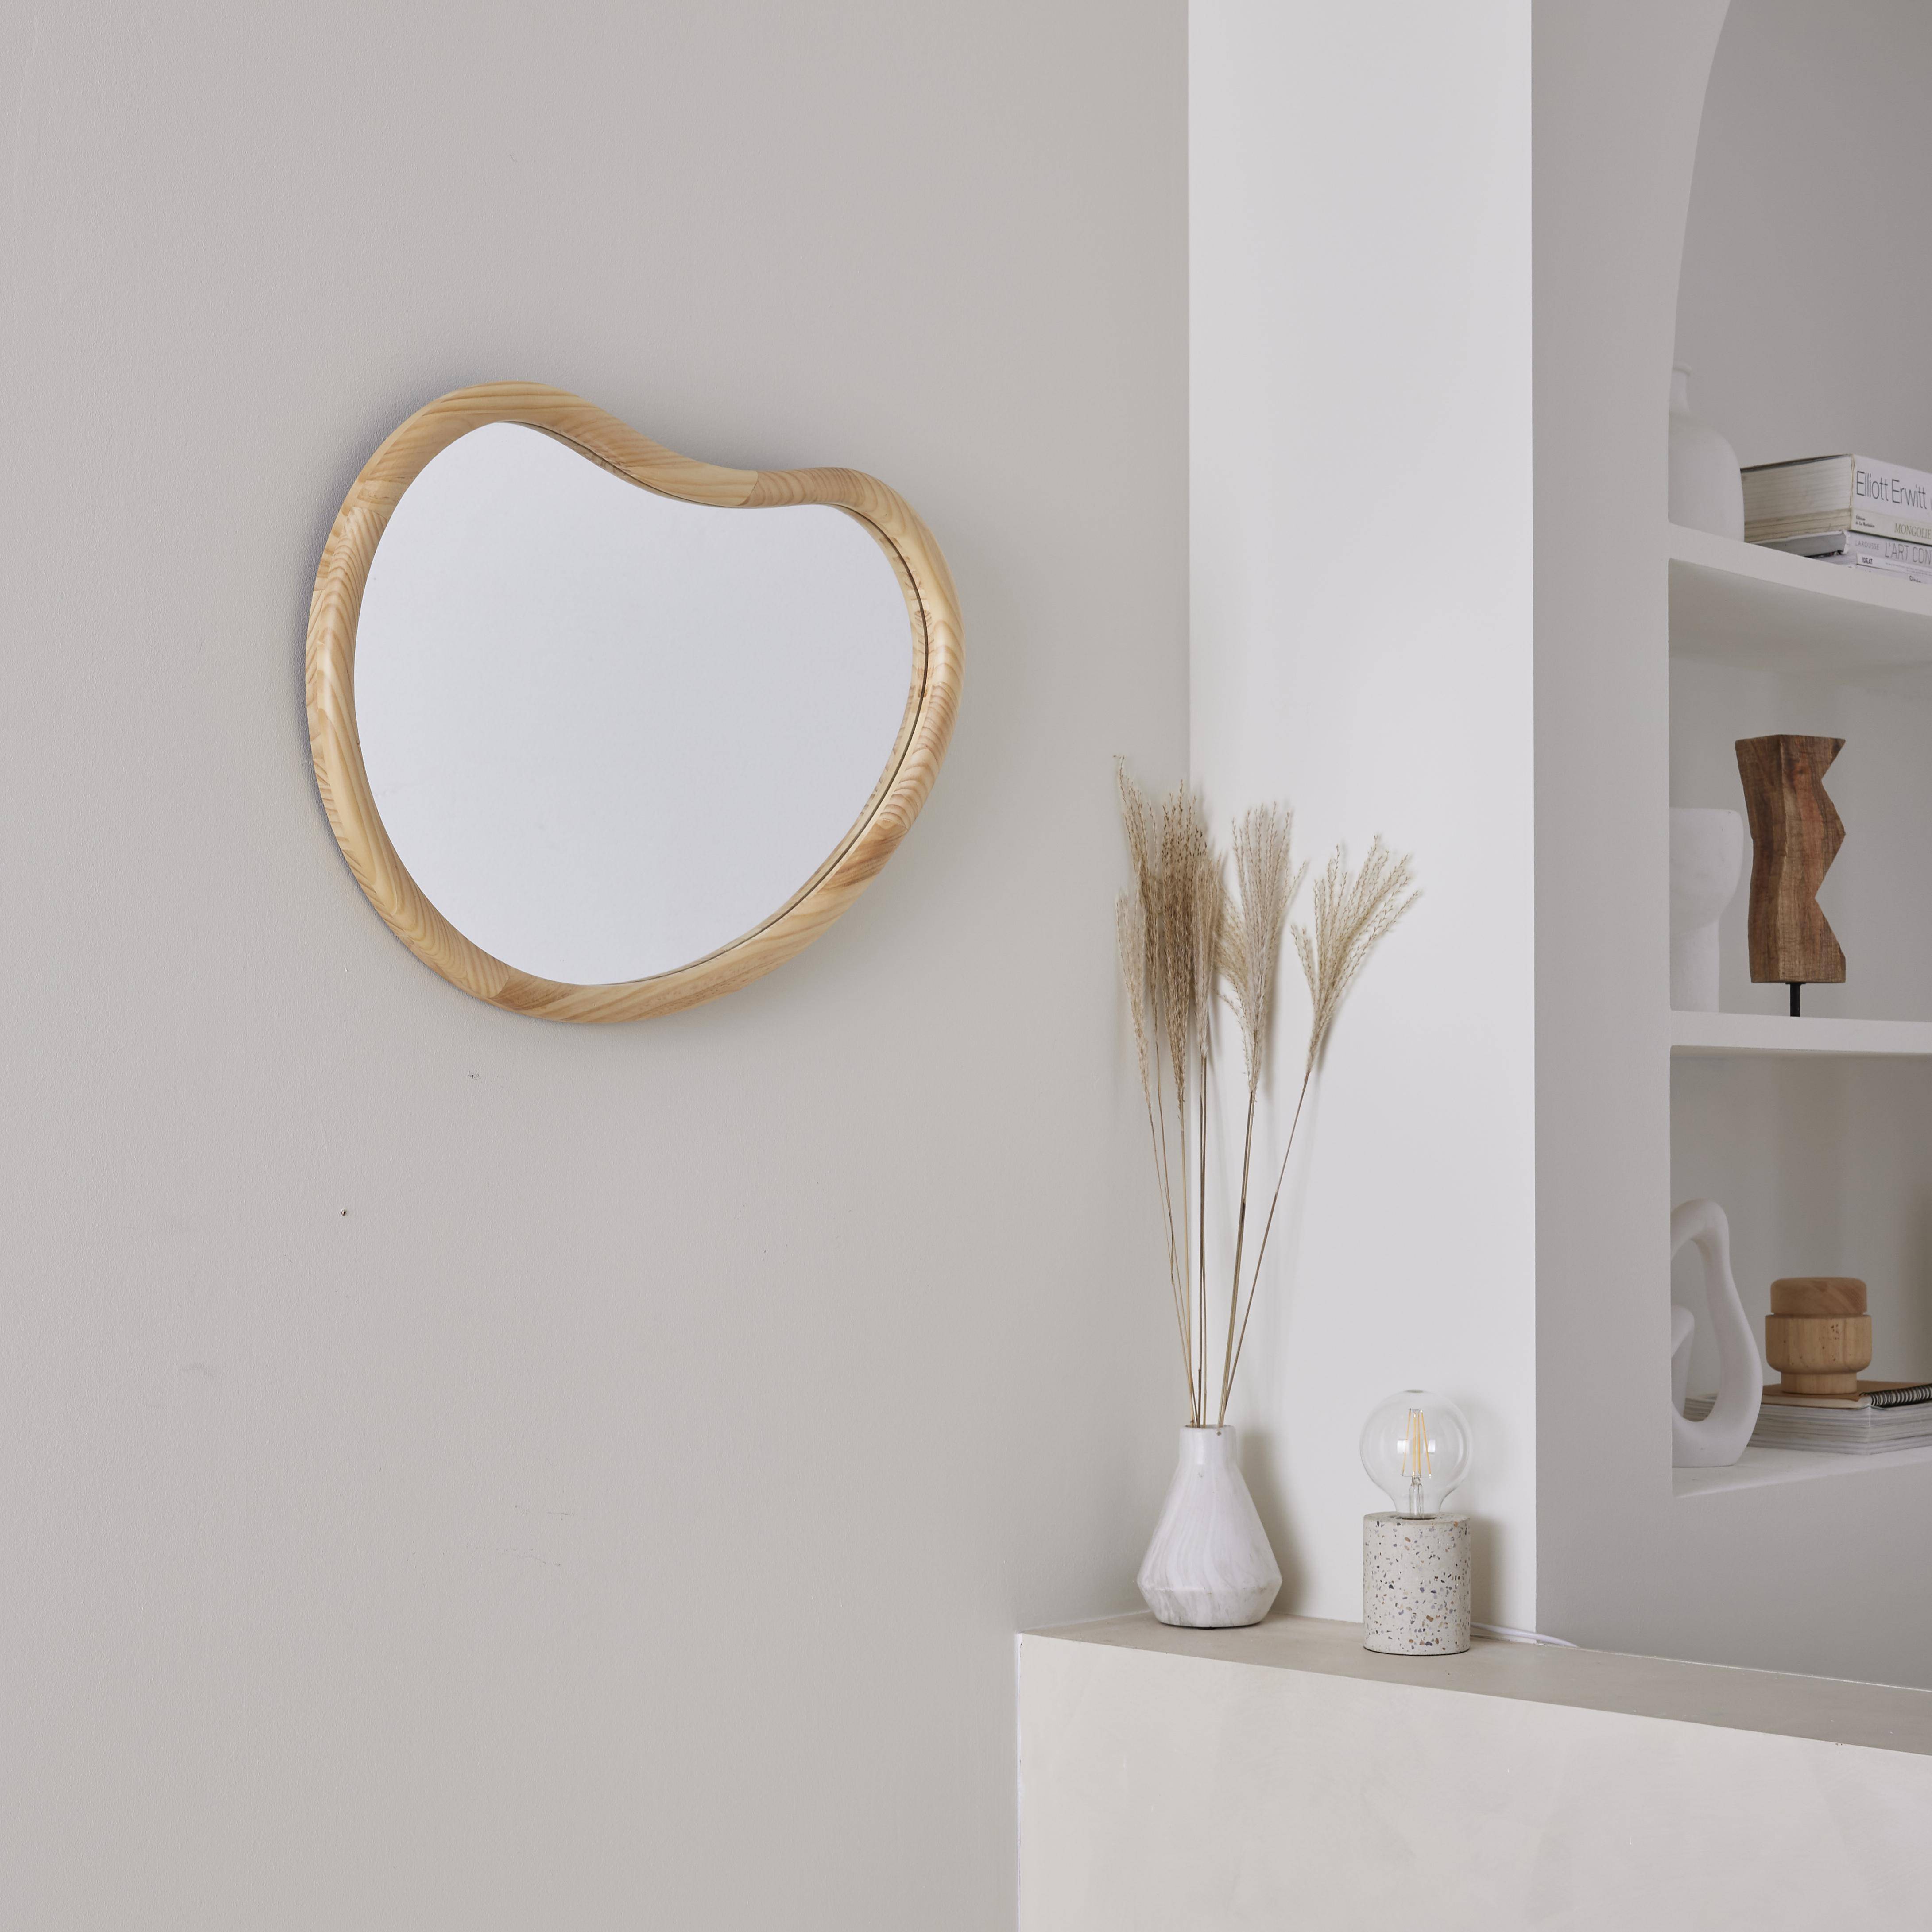 Organischer Spiegel aus Tannenholz 65cm 3cm dick naturfarben ideal für Eingang, Schlafzimmer oder Bad,sweeek,Photo2